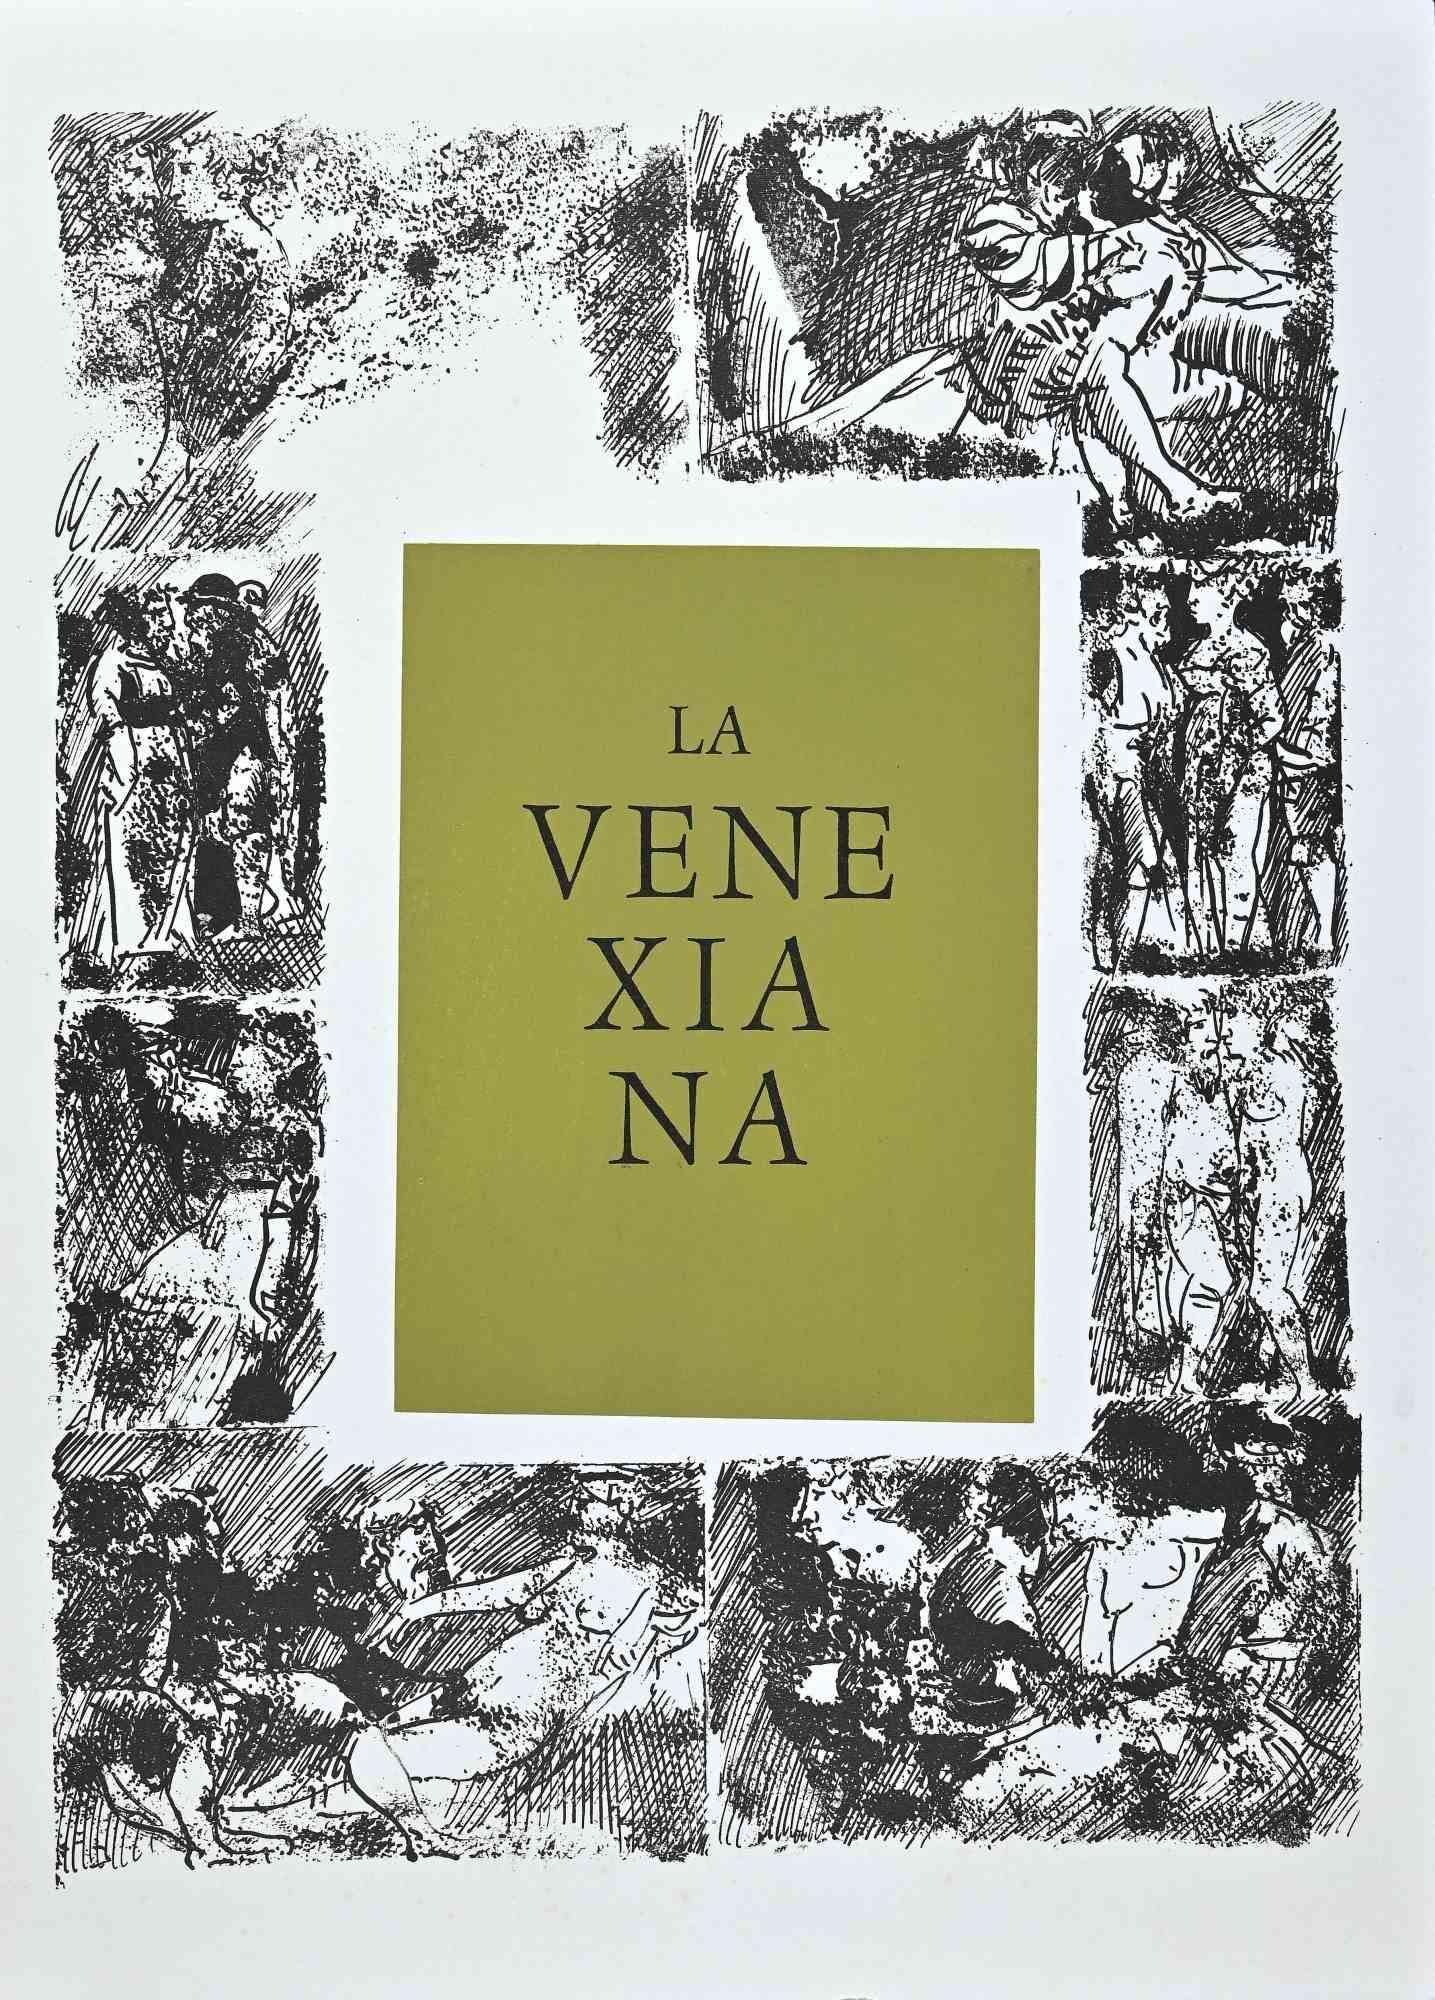 La Venexiana ist eine Original-Radierung und Aquatinta auf Papier, die Carlo Mattioli in den 1970er Jahren realisiert hat.

Sehr guter Zustand.

Das Kunstwerk wird durch geschickte Pinselstriche mit minimalistischen, harmonisch aufgetragenen Farben